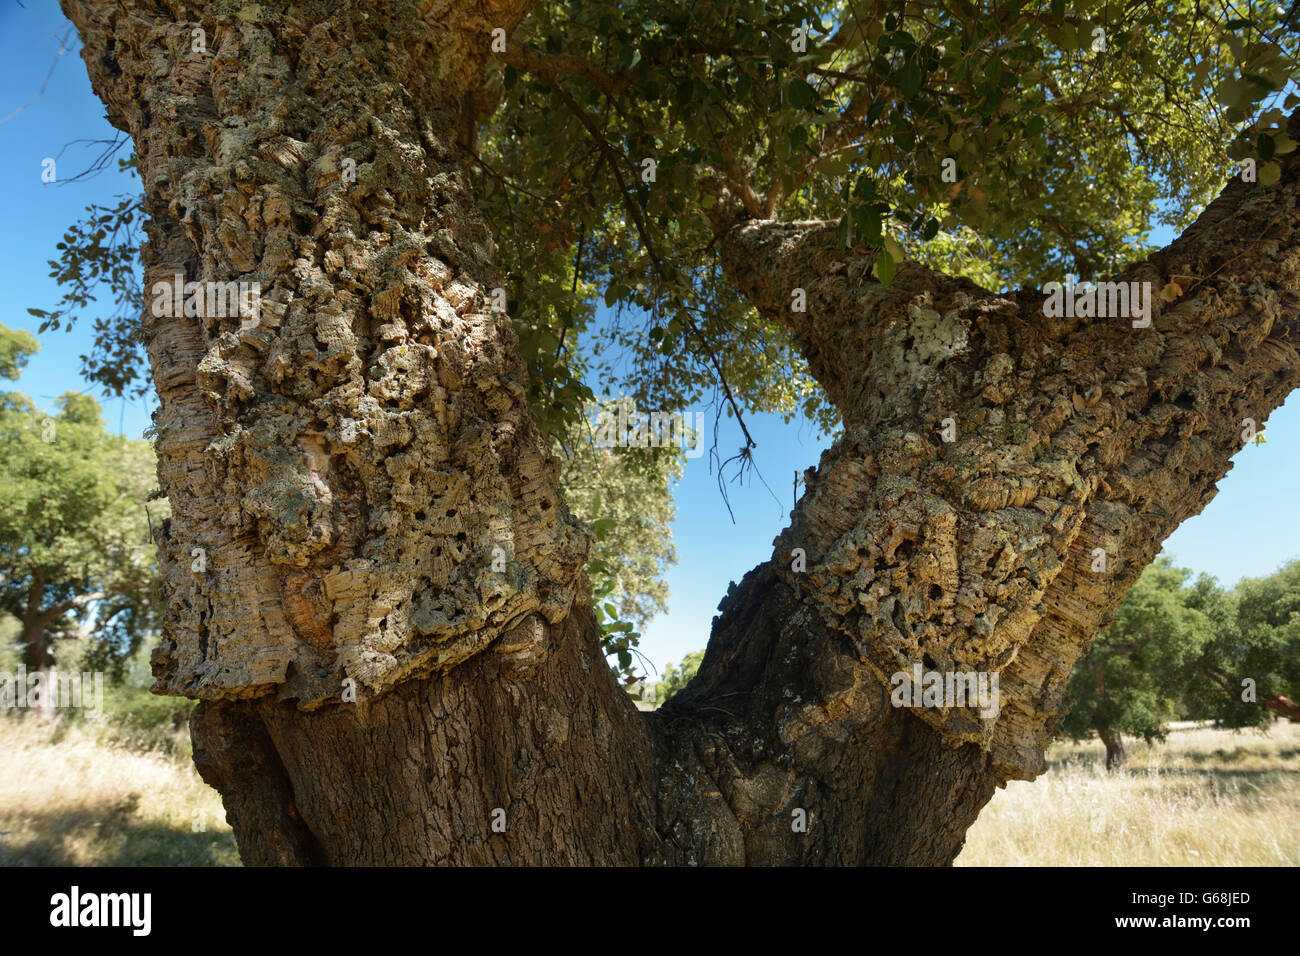 Harvested cork oak tree, Alentejo, Portugal Stock Photo